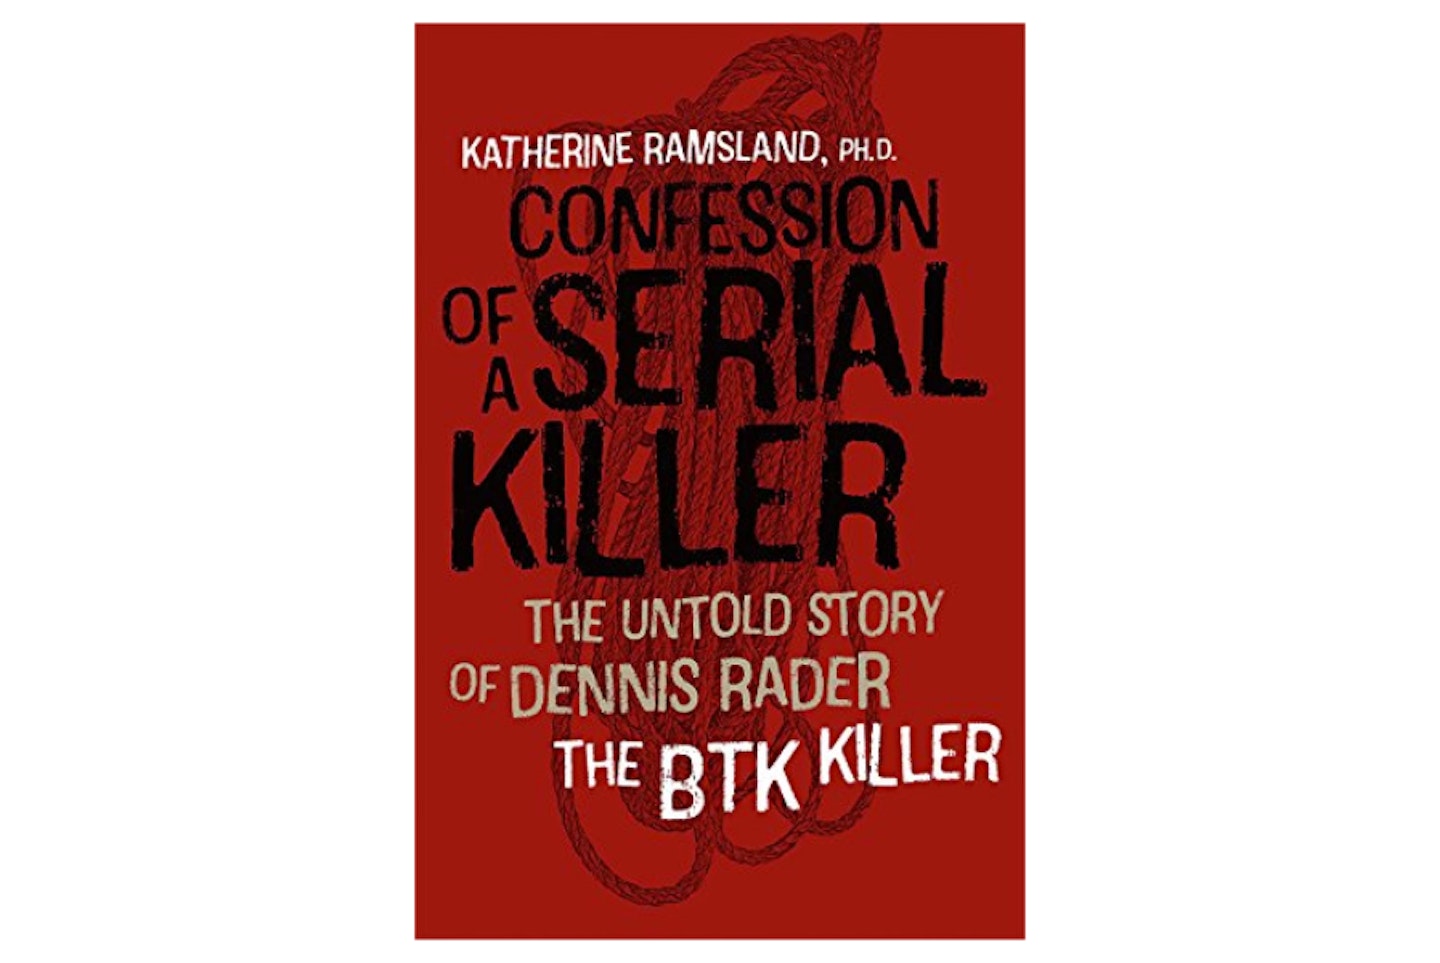 Confession of a Serial Killer: The Untold Story of Dennis Rader, the BTK Killer